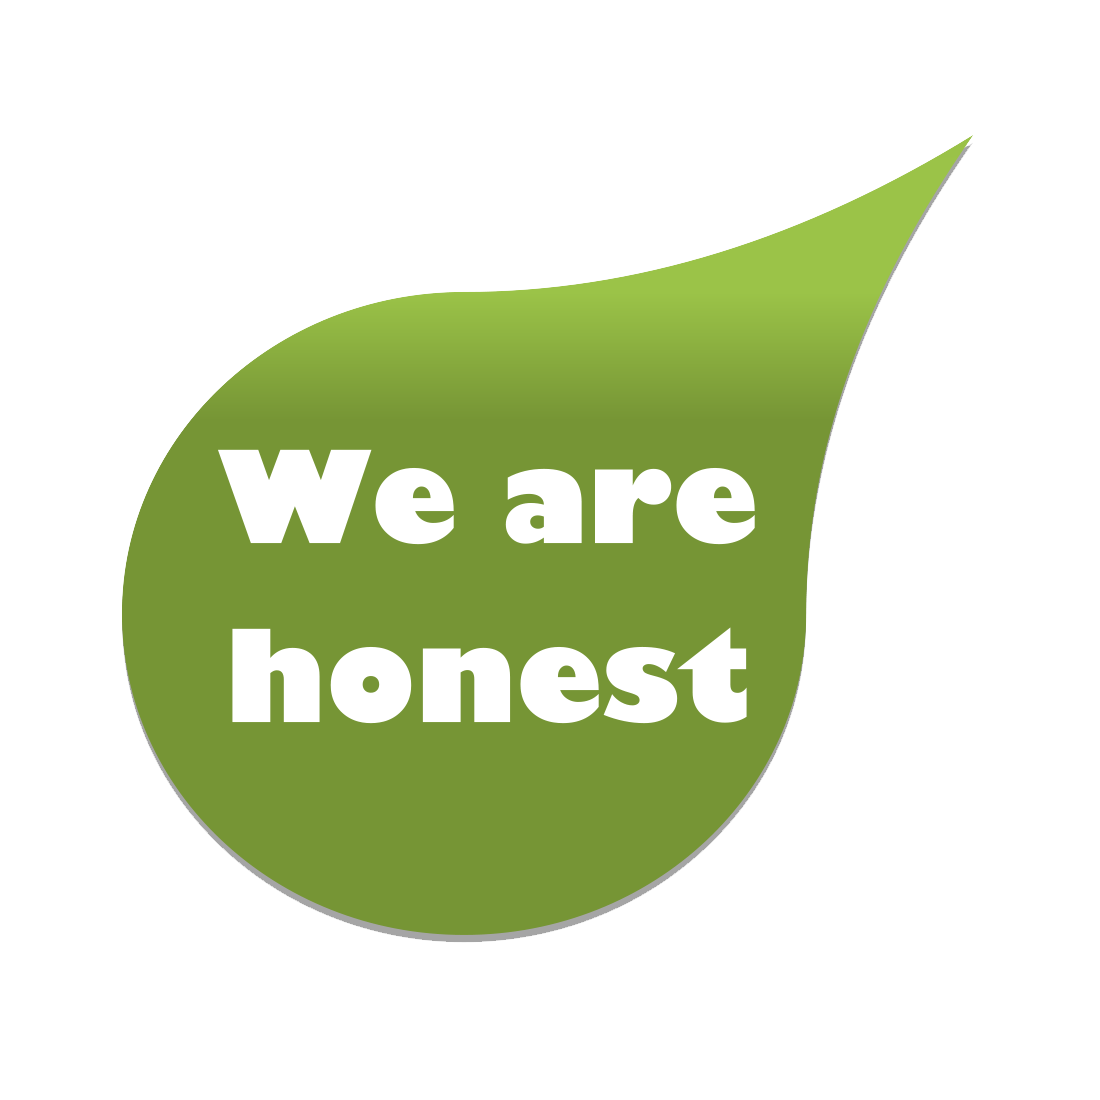 We are honest